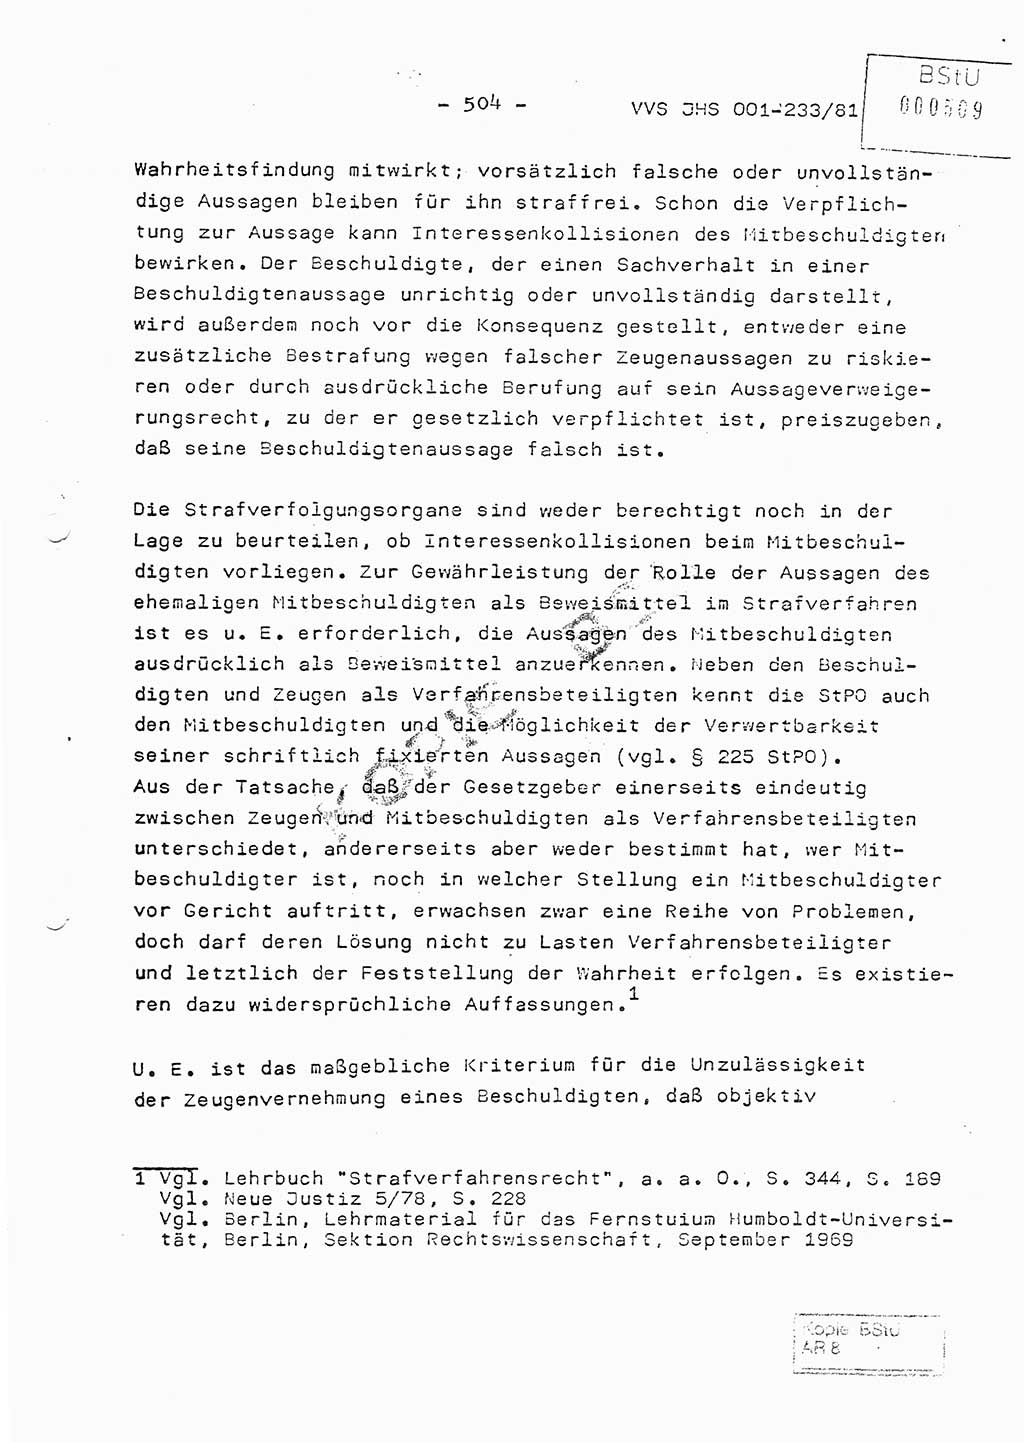 Dissertation Oberstleutnant Horst Zank (JHS), Oberstleutnant Dr. Karl-Heinz Knoblauch (JHS), Oberstleutnant Gustav-Adolf Kowalewski (HA Ⅸ), Oberstleutnant Wolfgang Plötner (HA Ⅸ), Ministerium für Staatssicherheit (MfS) [Deutsche Demokratische Republik (DDR)], Juristische Hochschule (JHS), Vertrauliche Verschlußsache (VVS) o001-233/81, Potsdam 1981, Blatt 504 (Diss. MfS DDR JHS VVS o001-233/81 1981, Bl. 504)